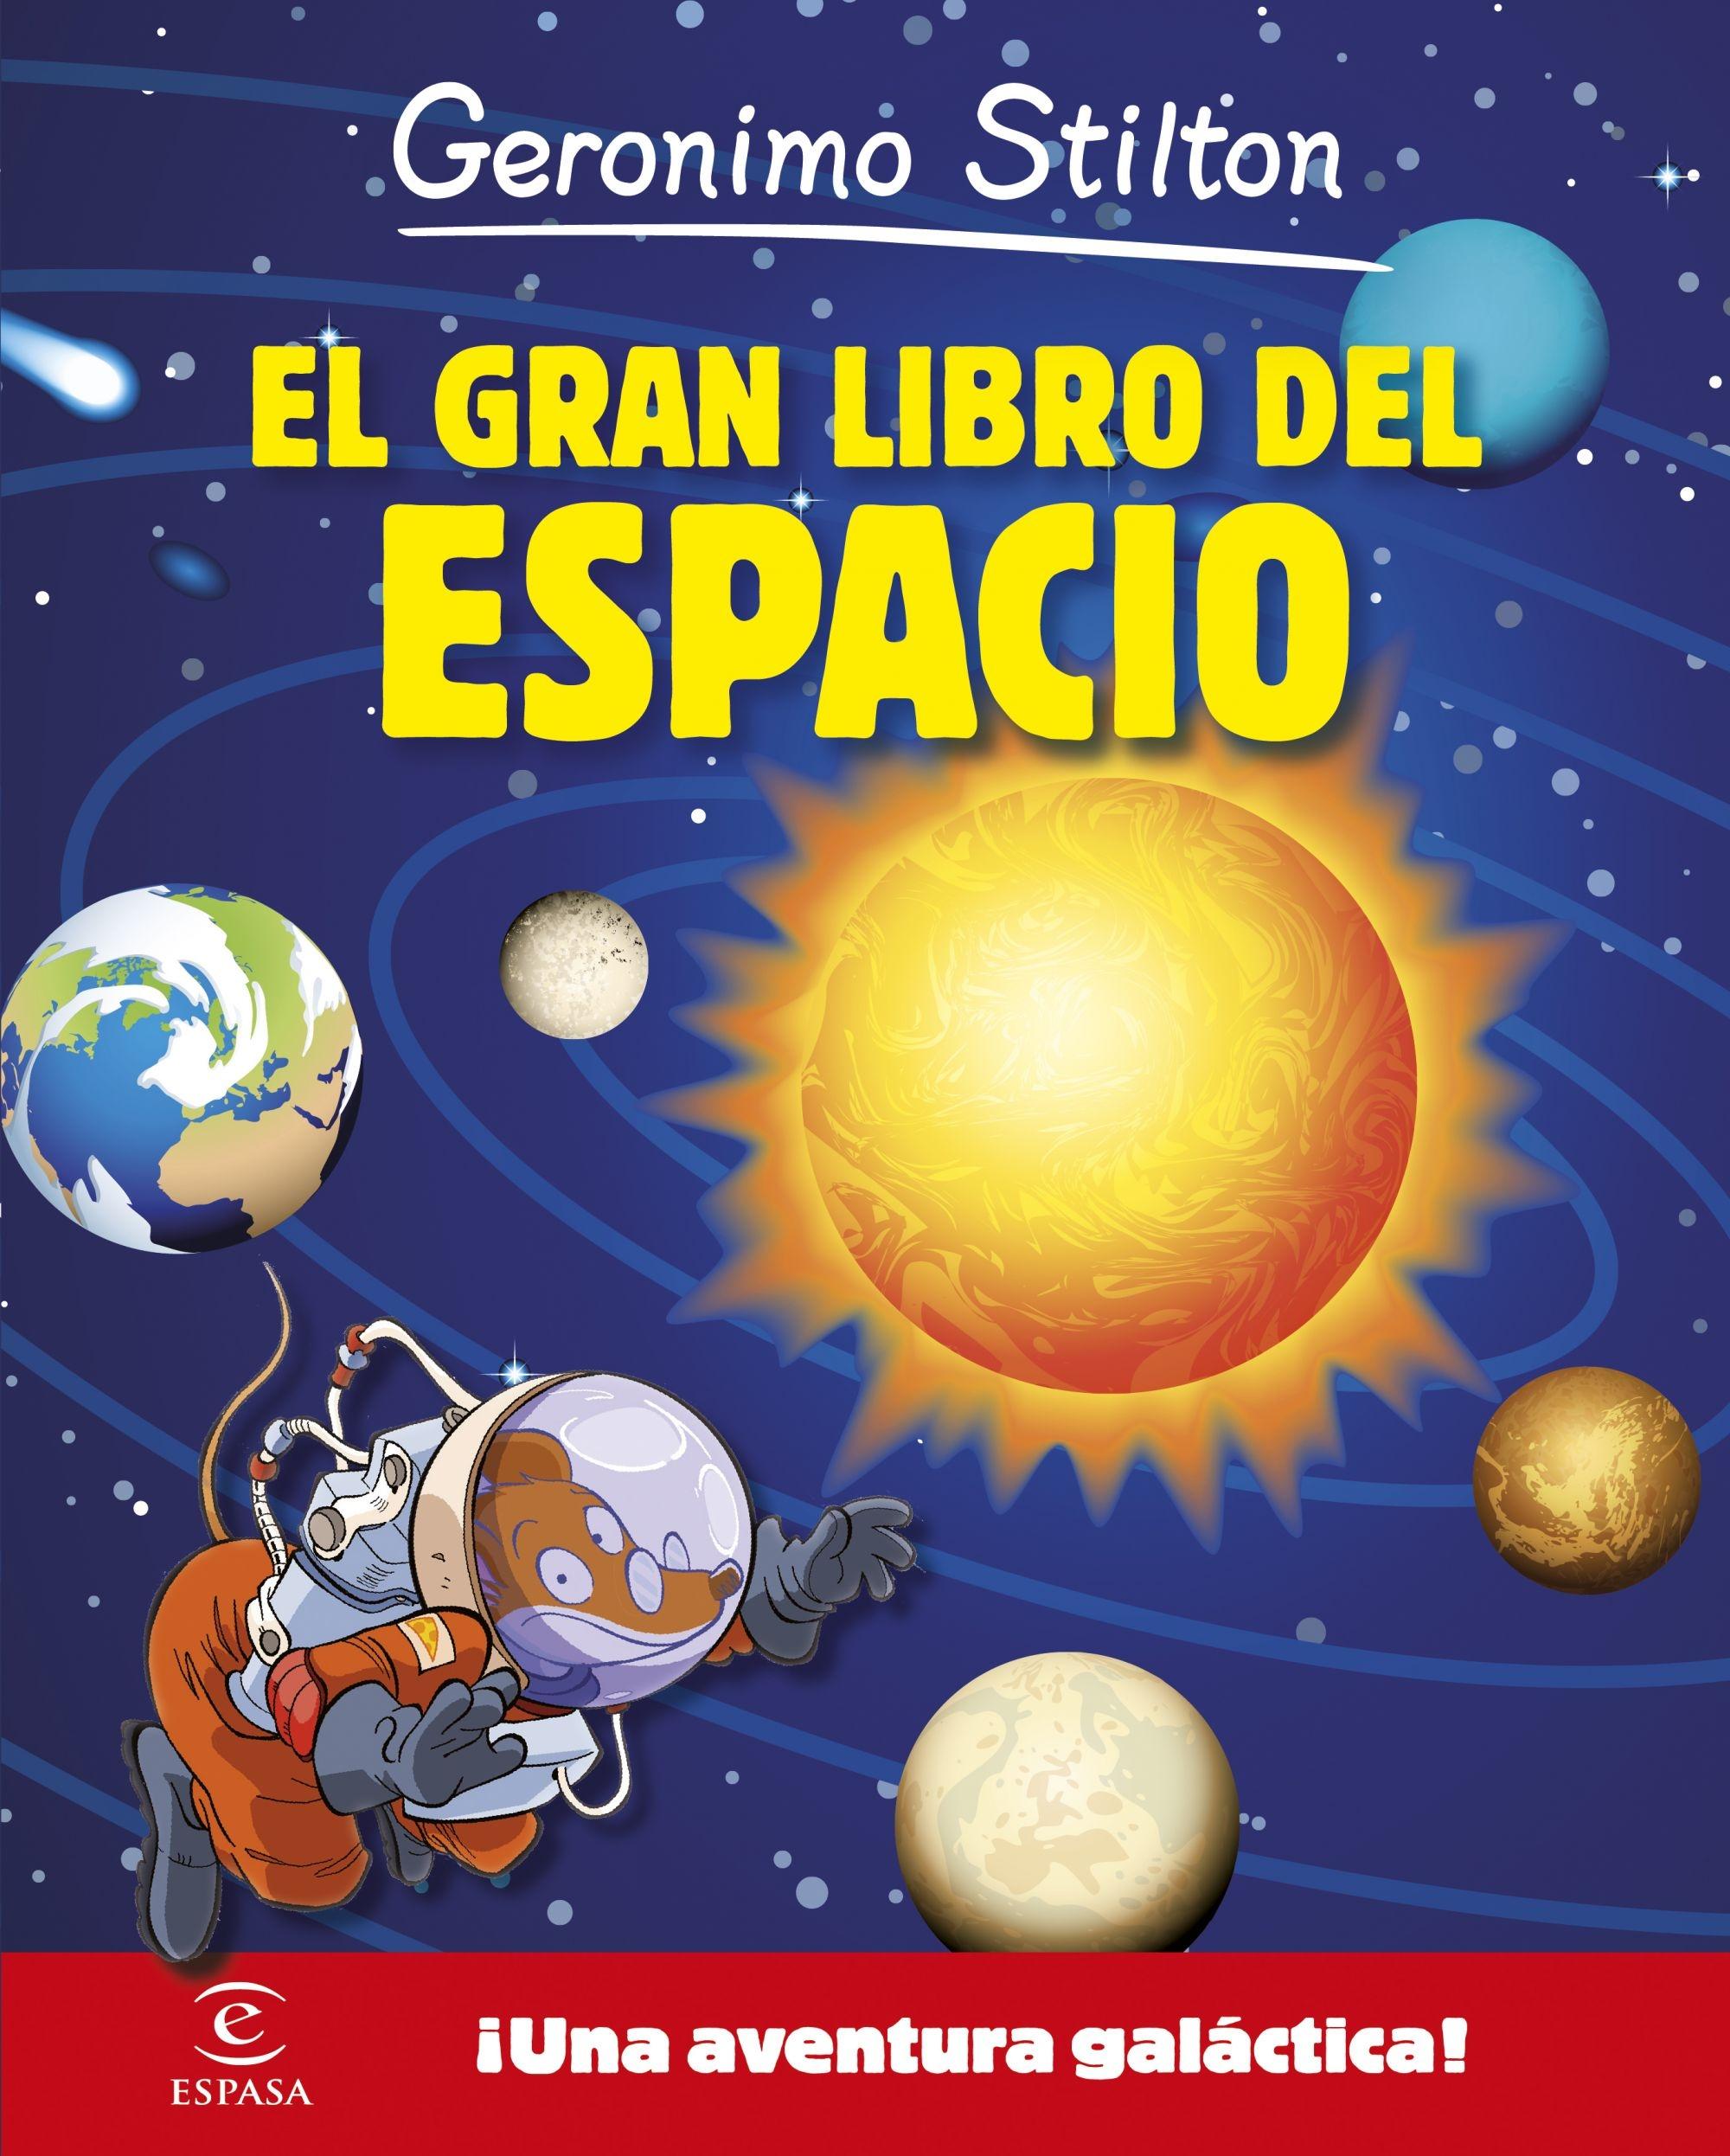 Geronimo Stilton. el Gran Libro del Espacio "¡Una Aventura Galáctica!". 